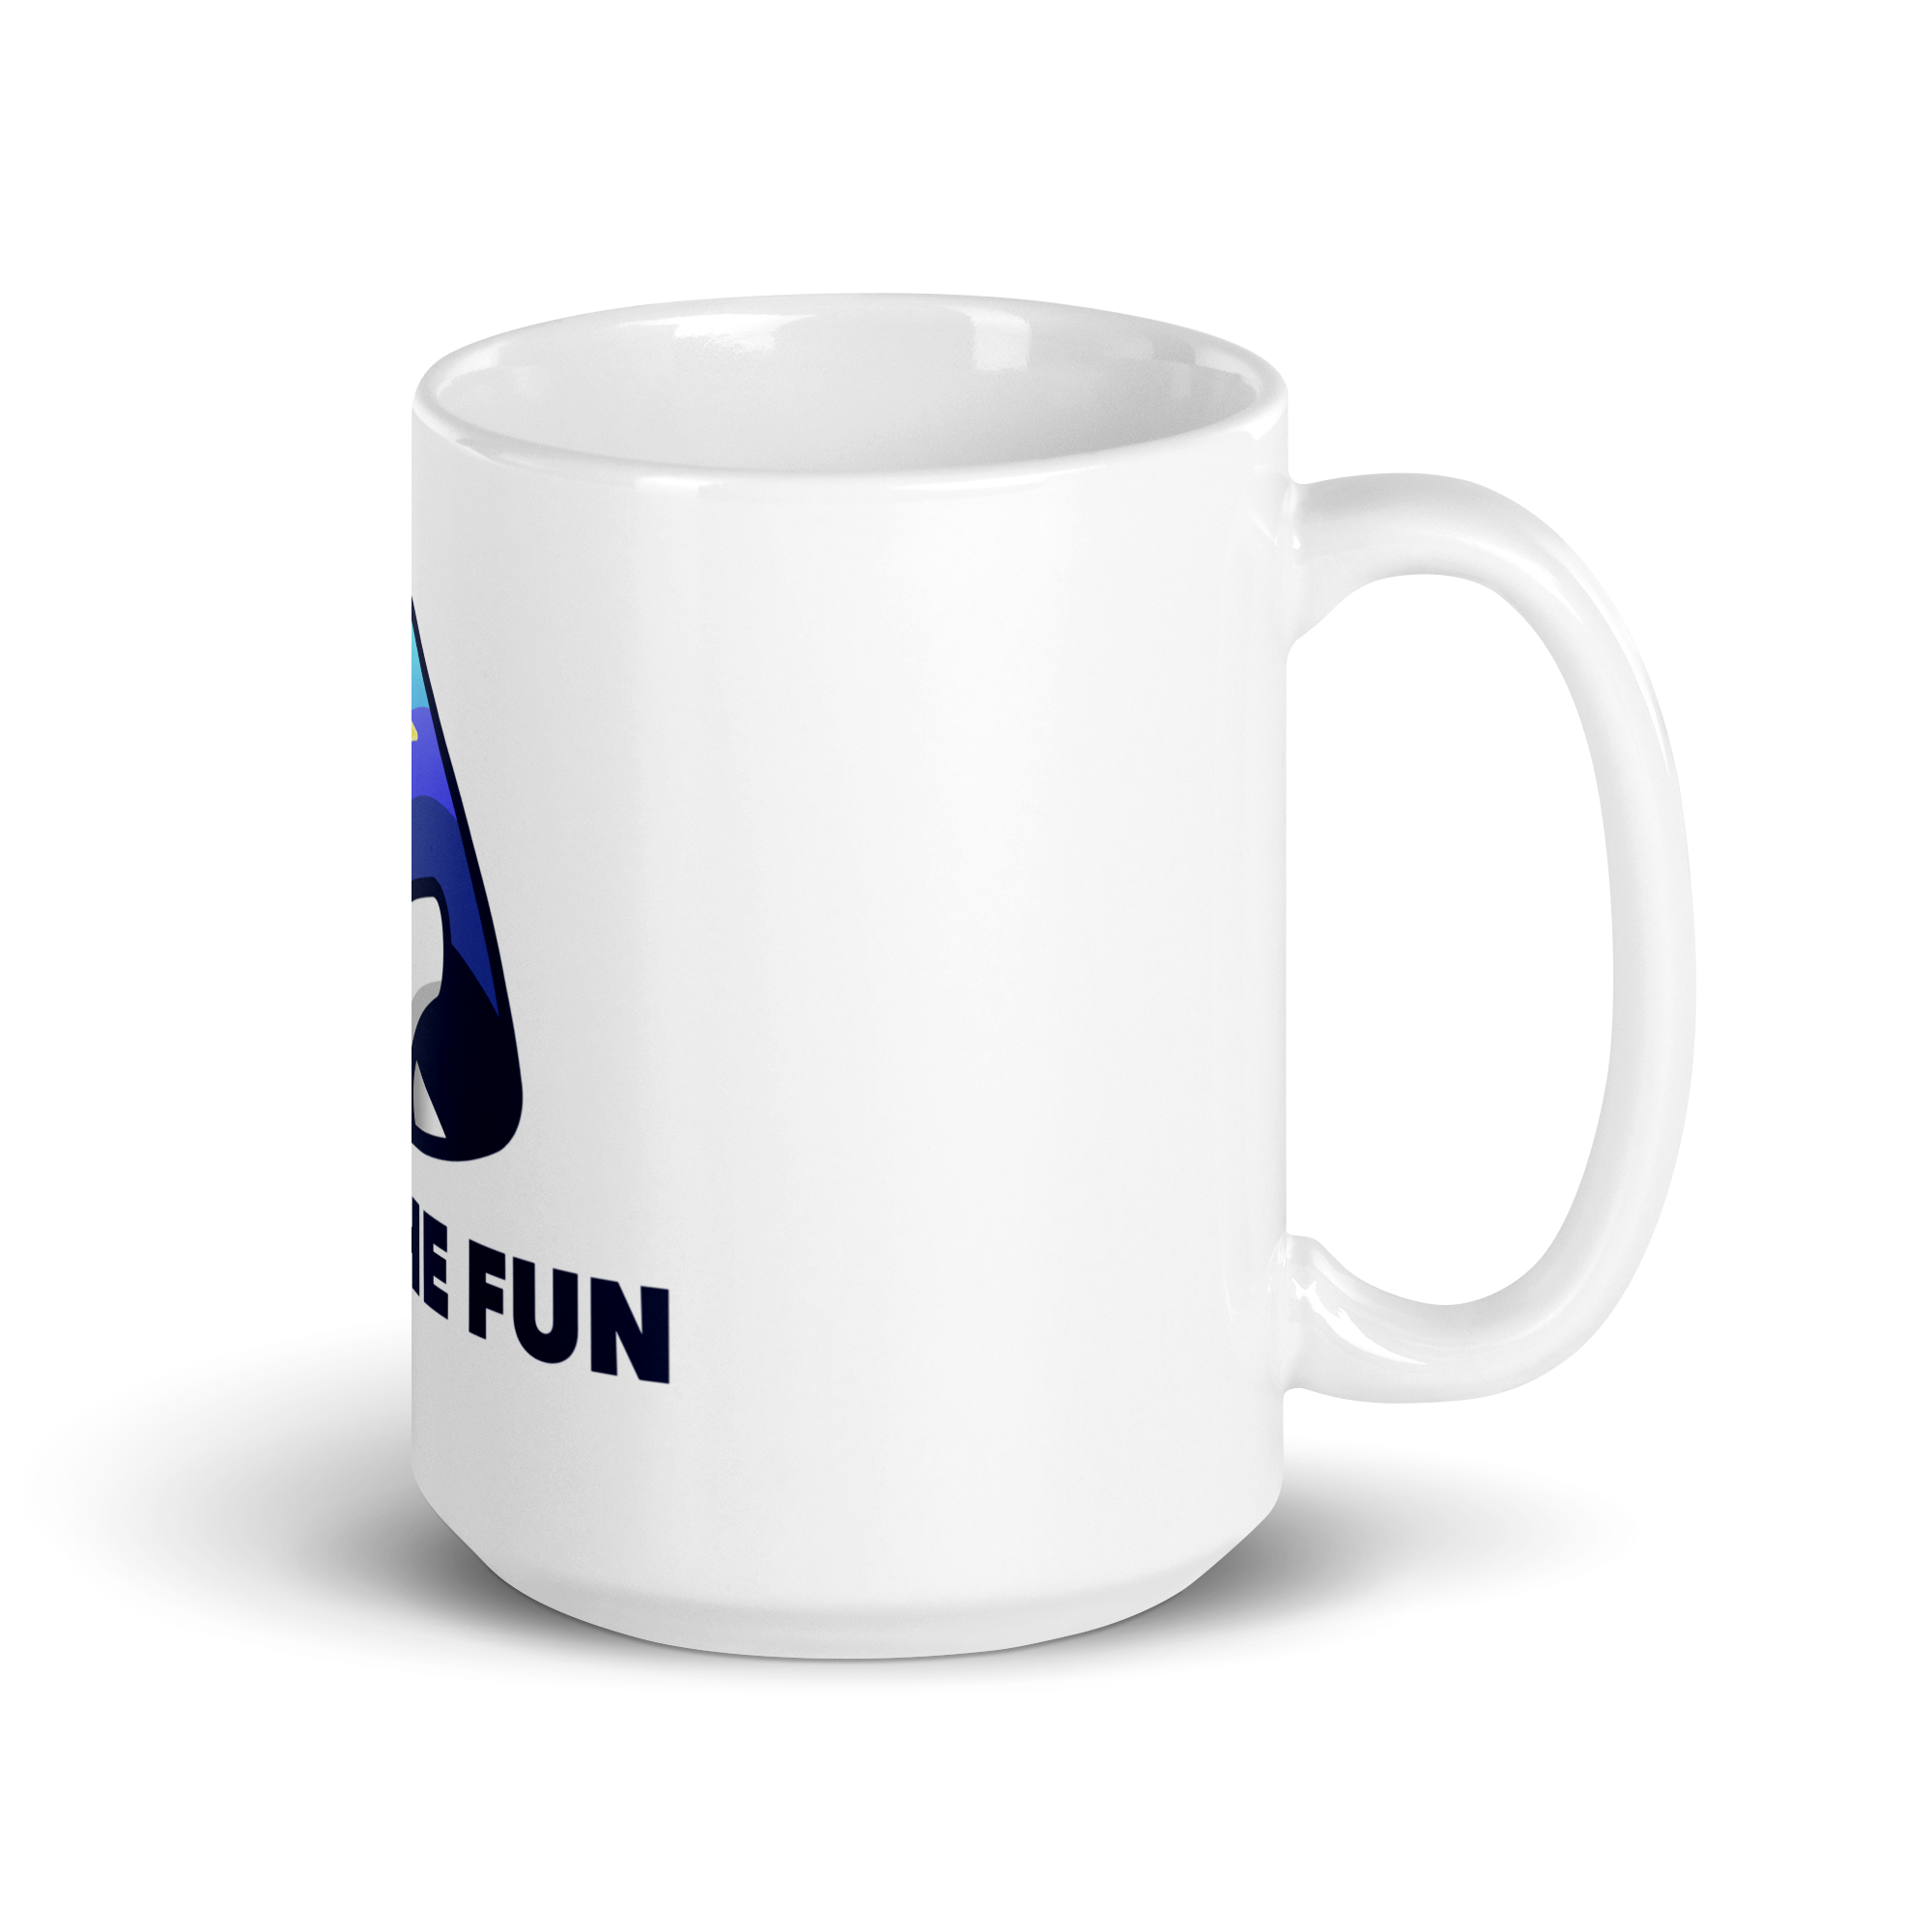 Find The Fun Mug